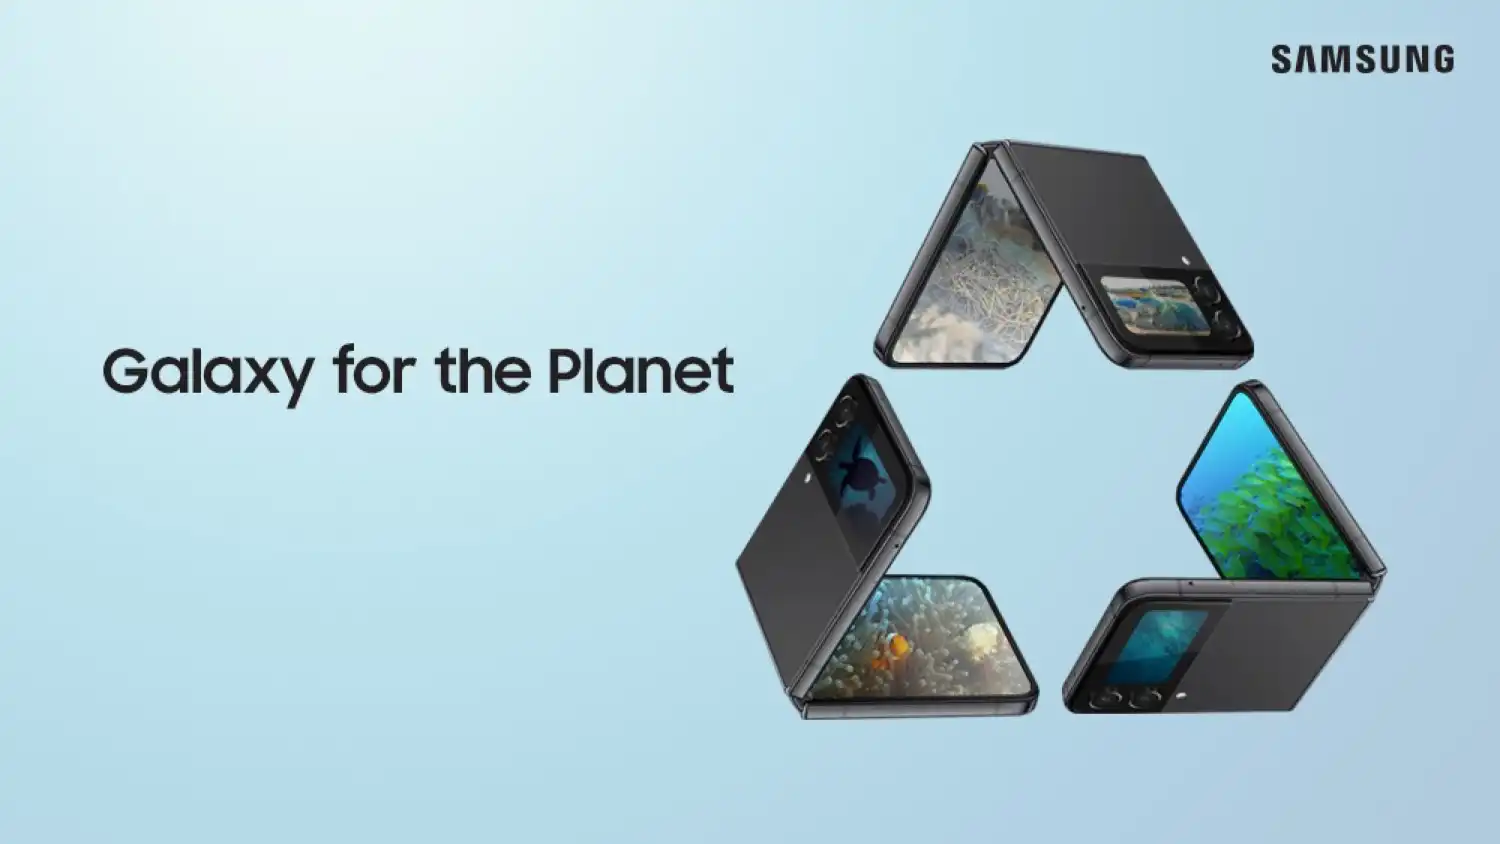 Samsung impulsa un futuro responsable y sostenible con el planeta